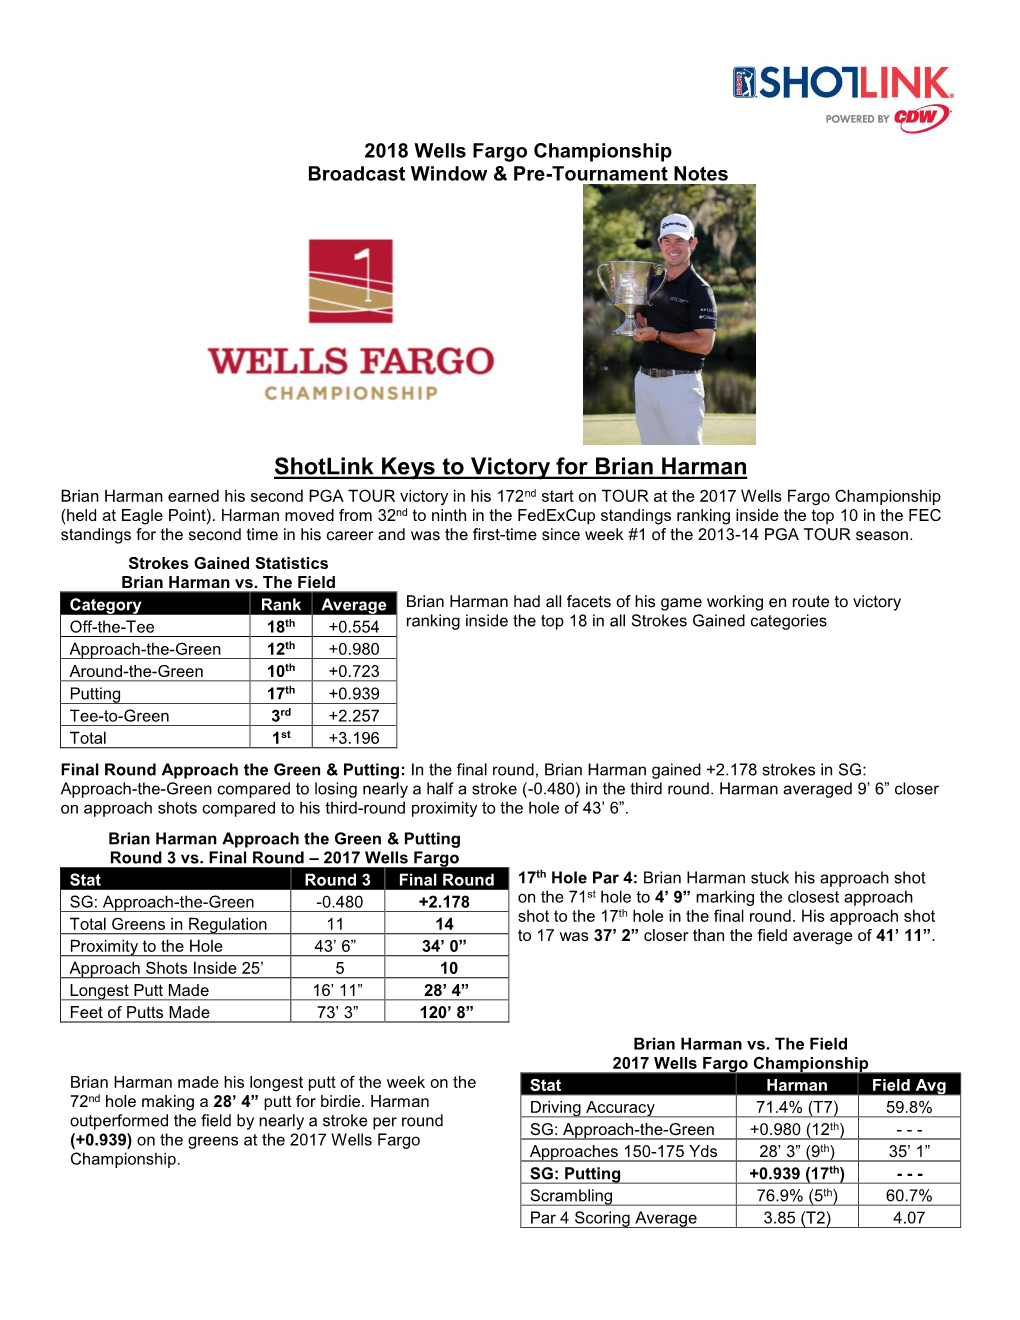 2018 Wells Fargo Championship Shotlink & Broadcast Window Notes